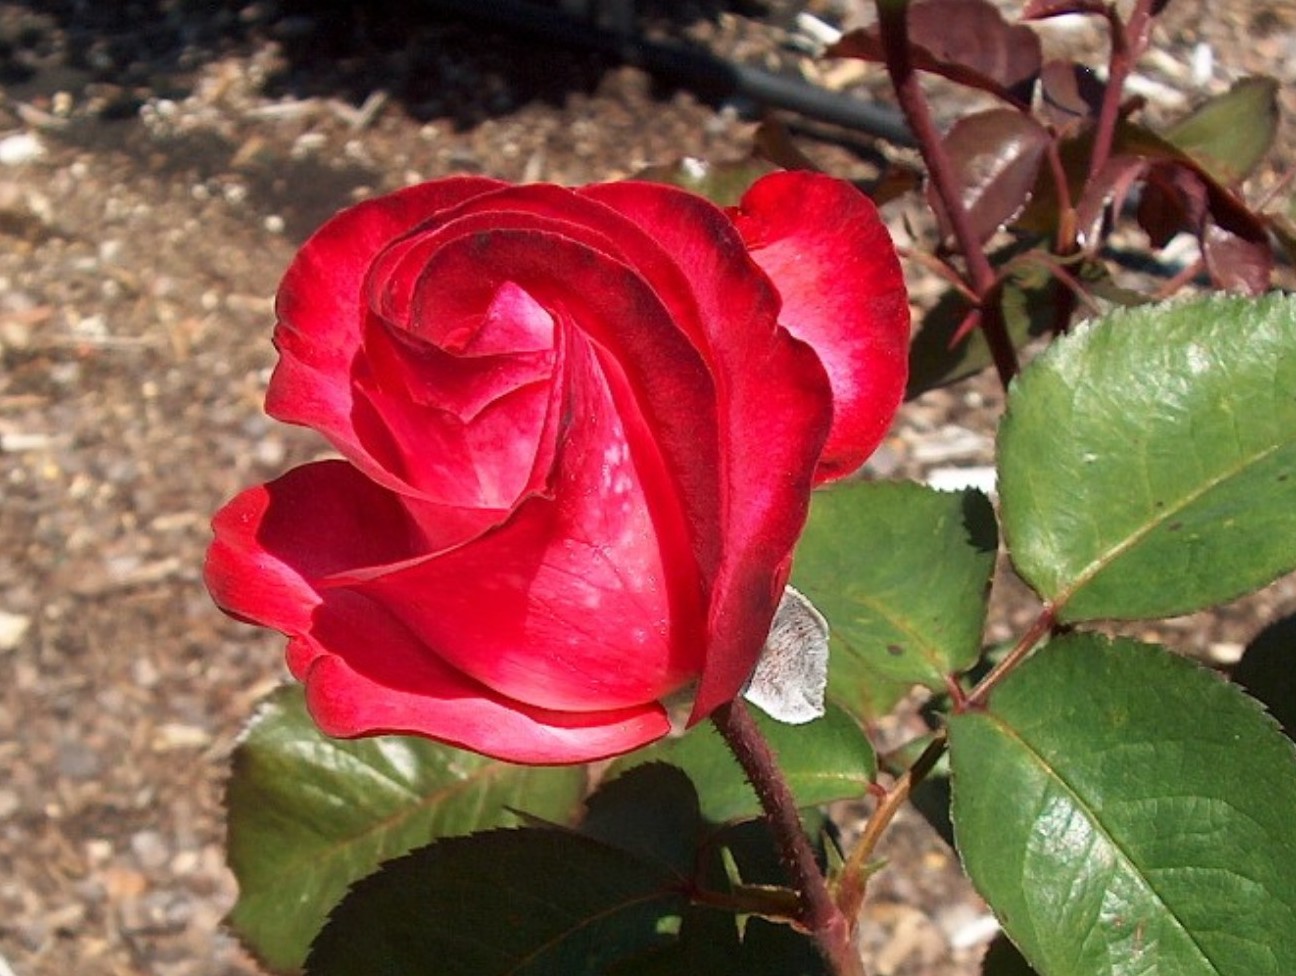 Rosa 'Gardens of the World'  / Gardens of the World Rose